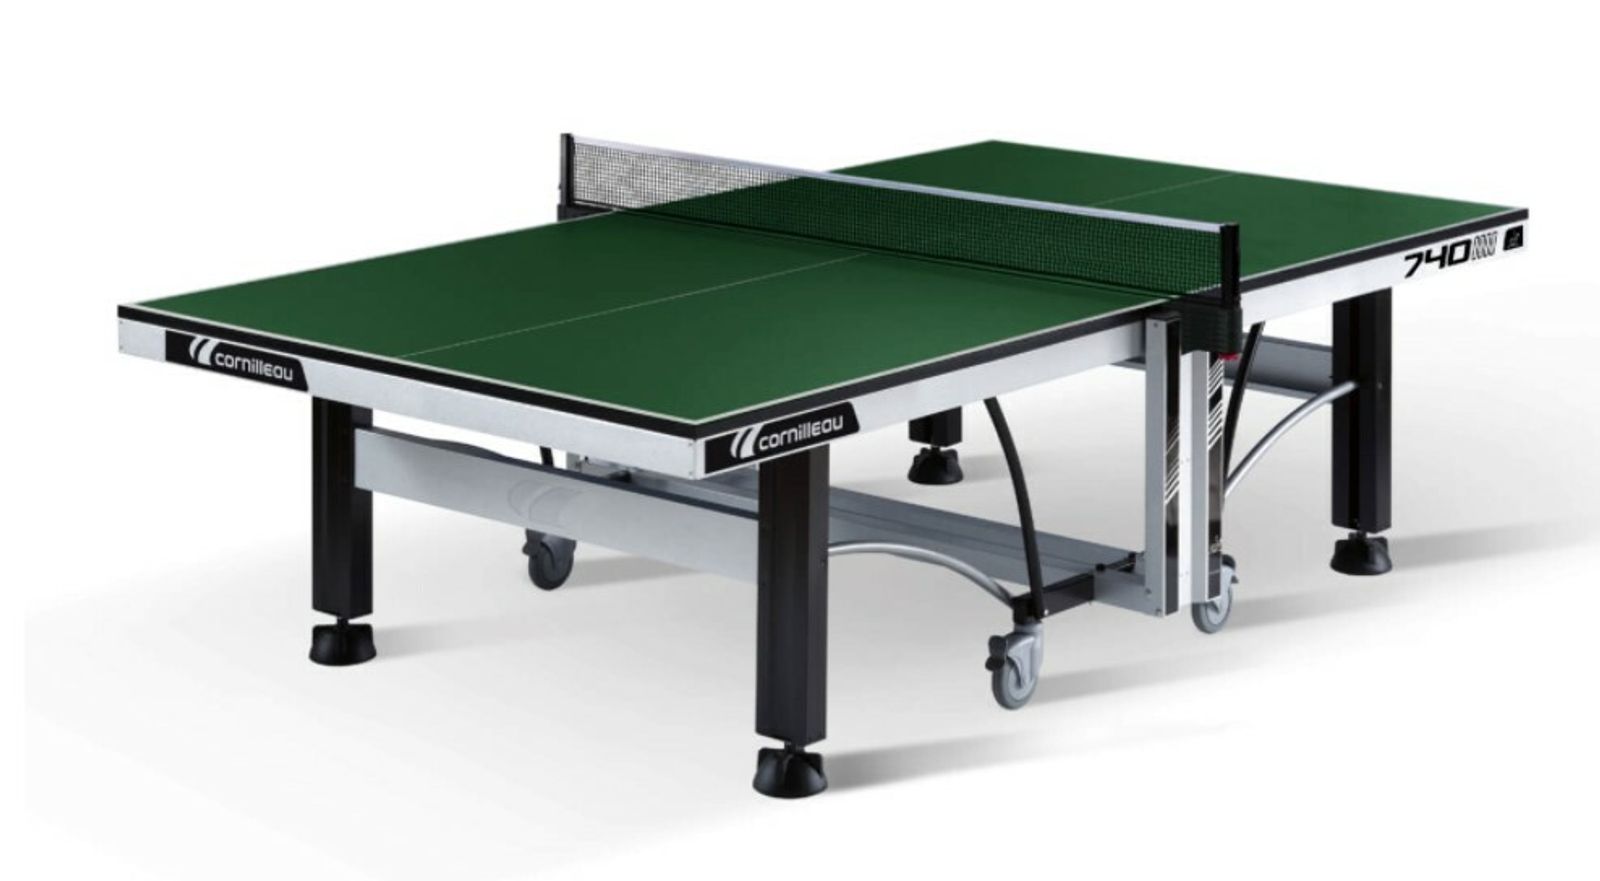 Теннисный стол Cornilleau складной профессиональный  COMPETITION 740 ITTF green 25 мм фото №1